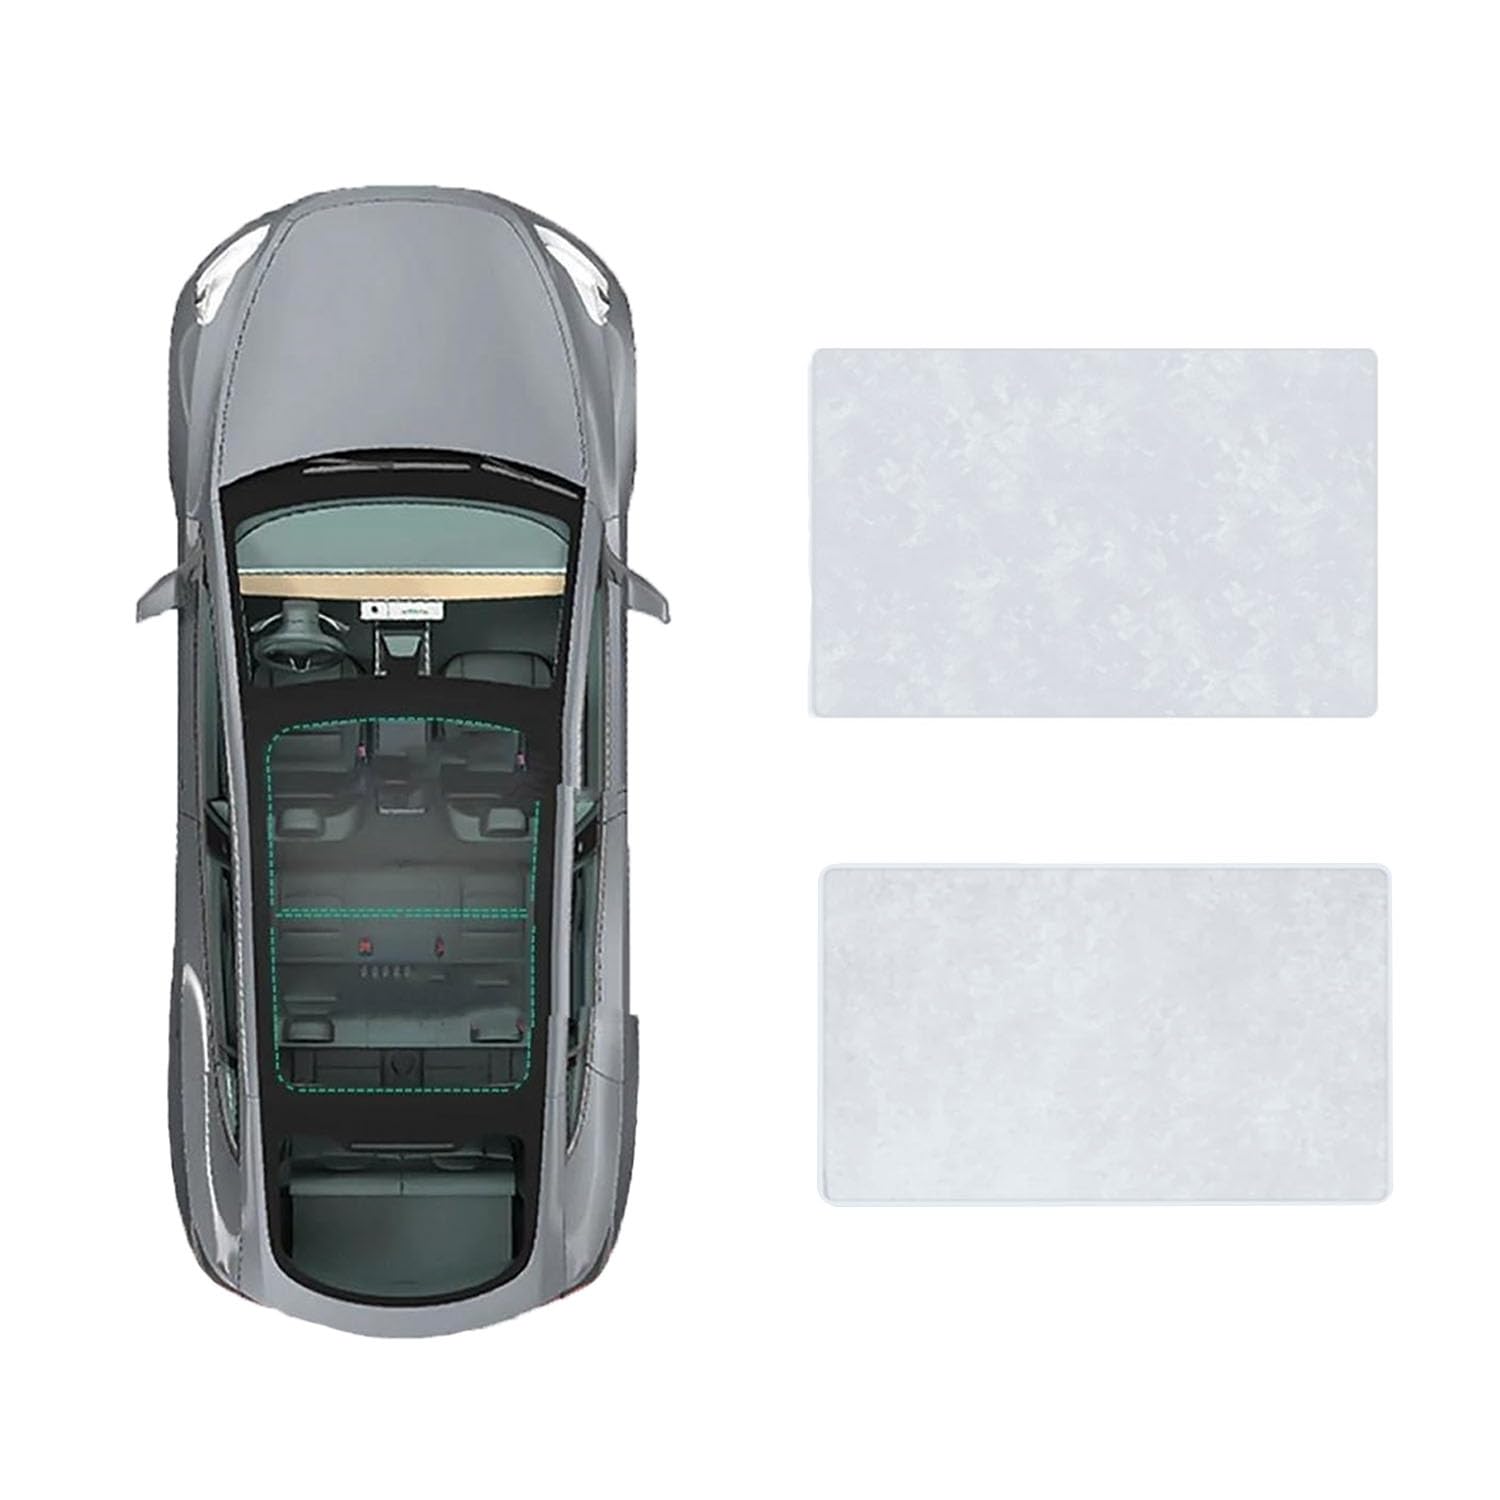 Für Audi A4L 2017- Autofenster Sonnenschutz Dachsonnenschutz Auto Schiebedach Sonnenschirm Dachfenster Rollo Beschattung Zubehör,B-Gray White Suede von JiAYuF